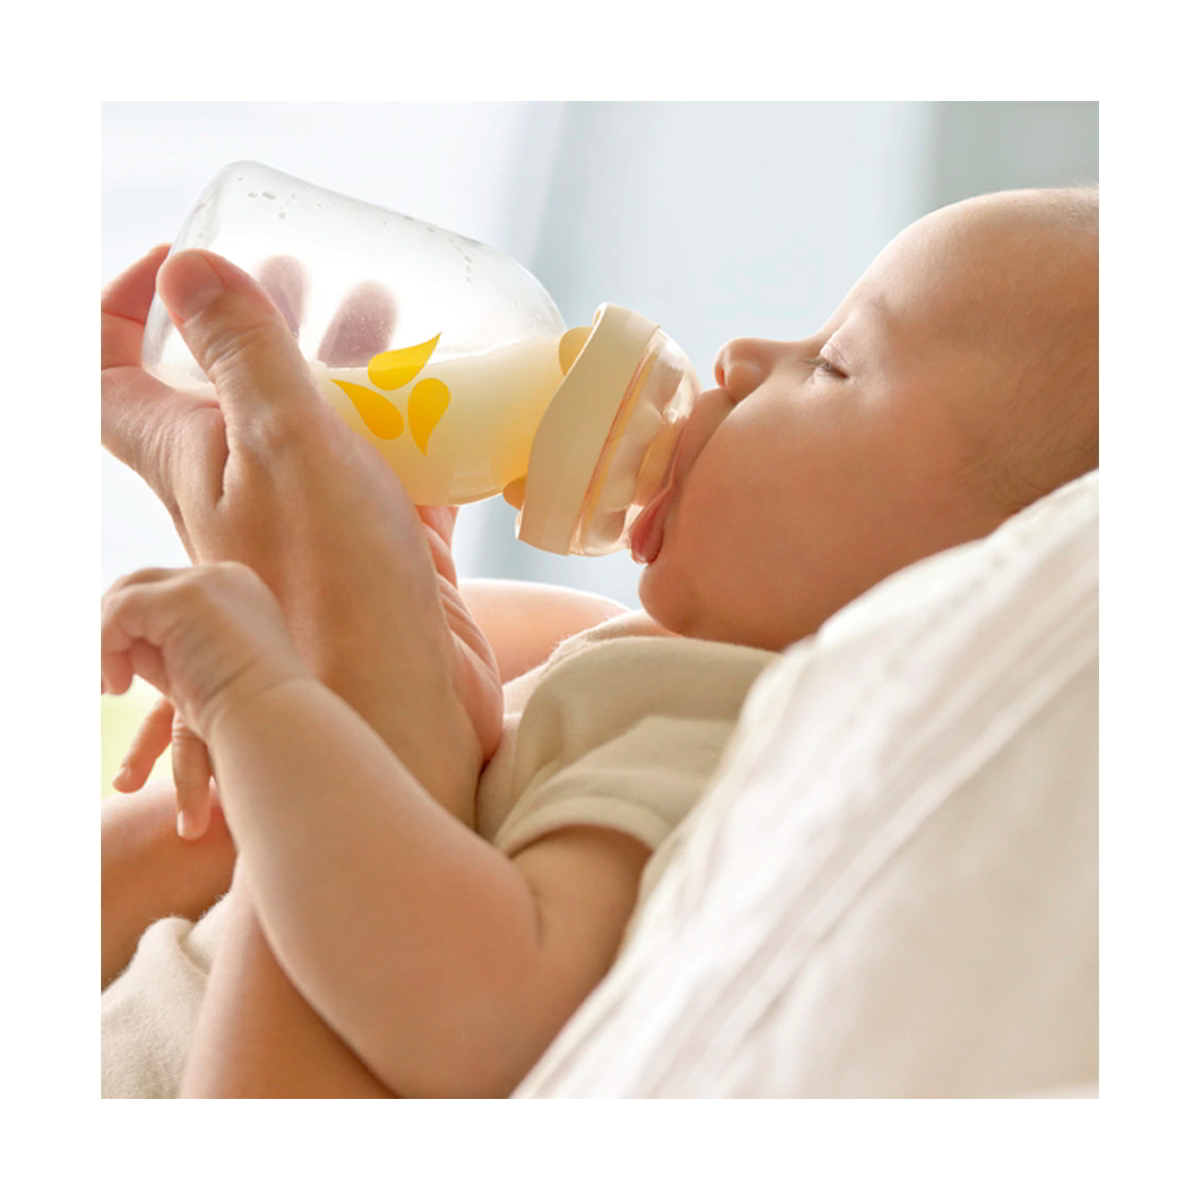 Biberón Medela Calma 250 ml para leche maternal